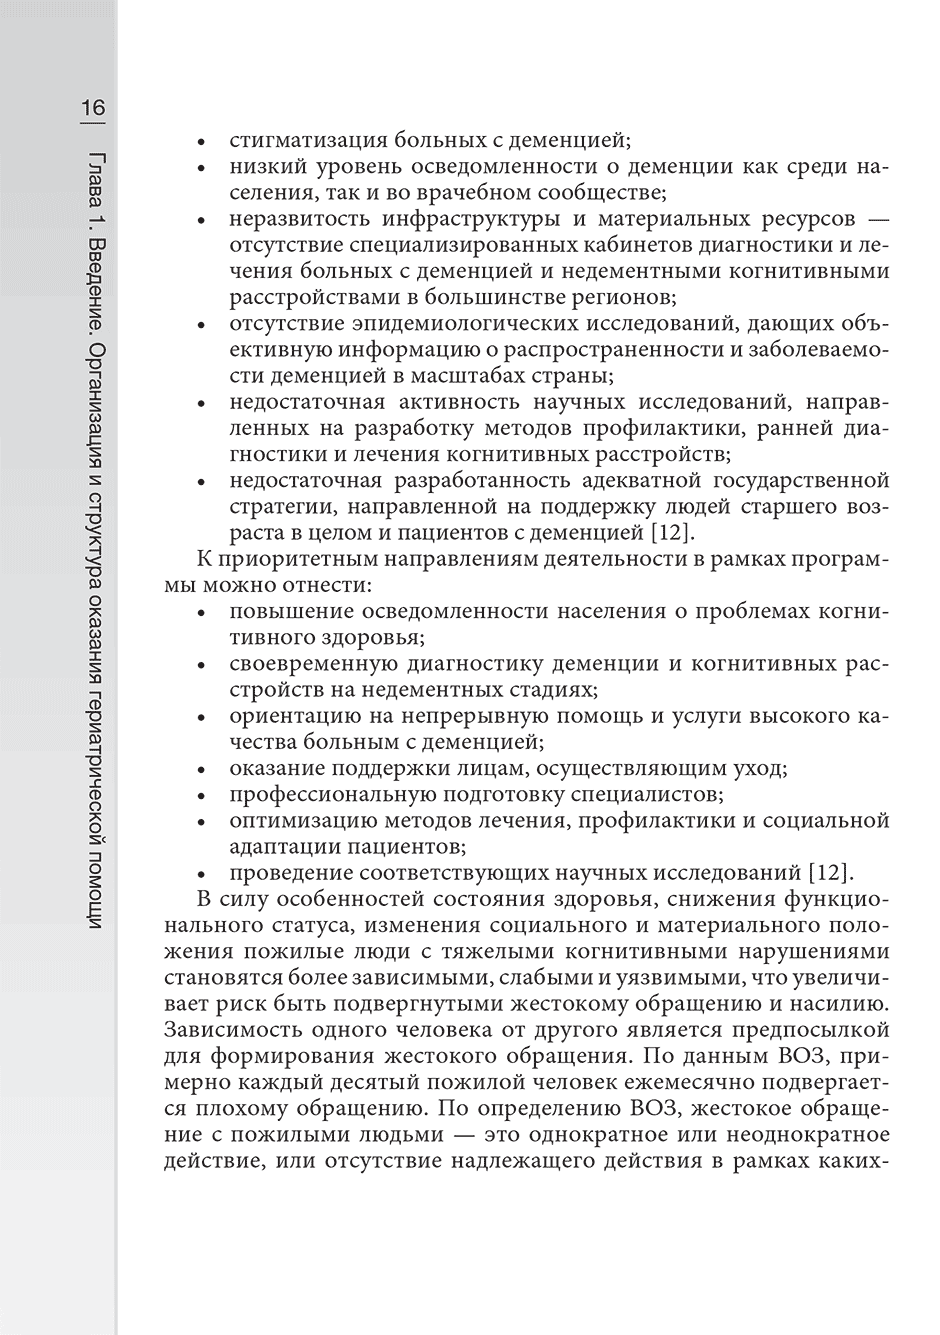 Пример страницы из книги "Нарушение когнитивных функций в пожилом возрасте. Руководство" - Фролова Е. В., Емелин А. Ю., Лобзин В. Ю.